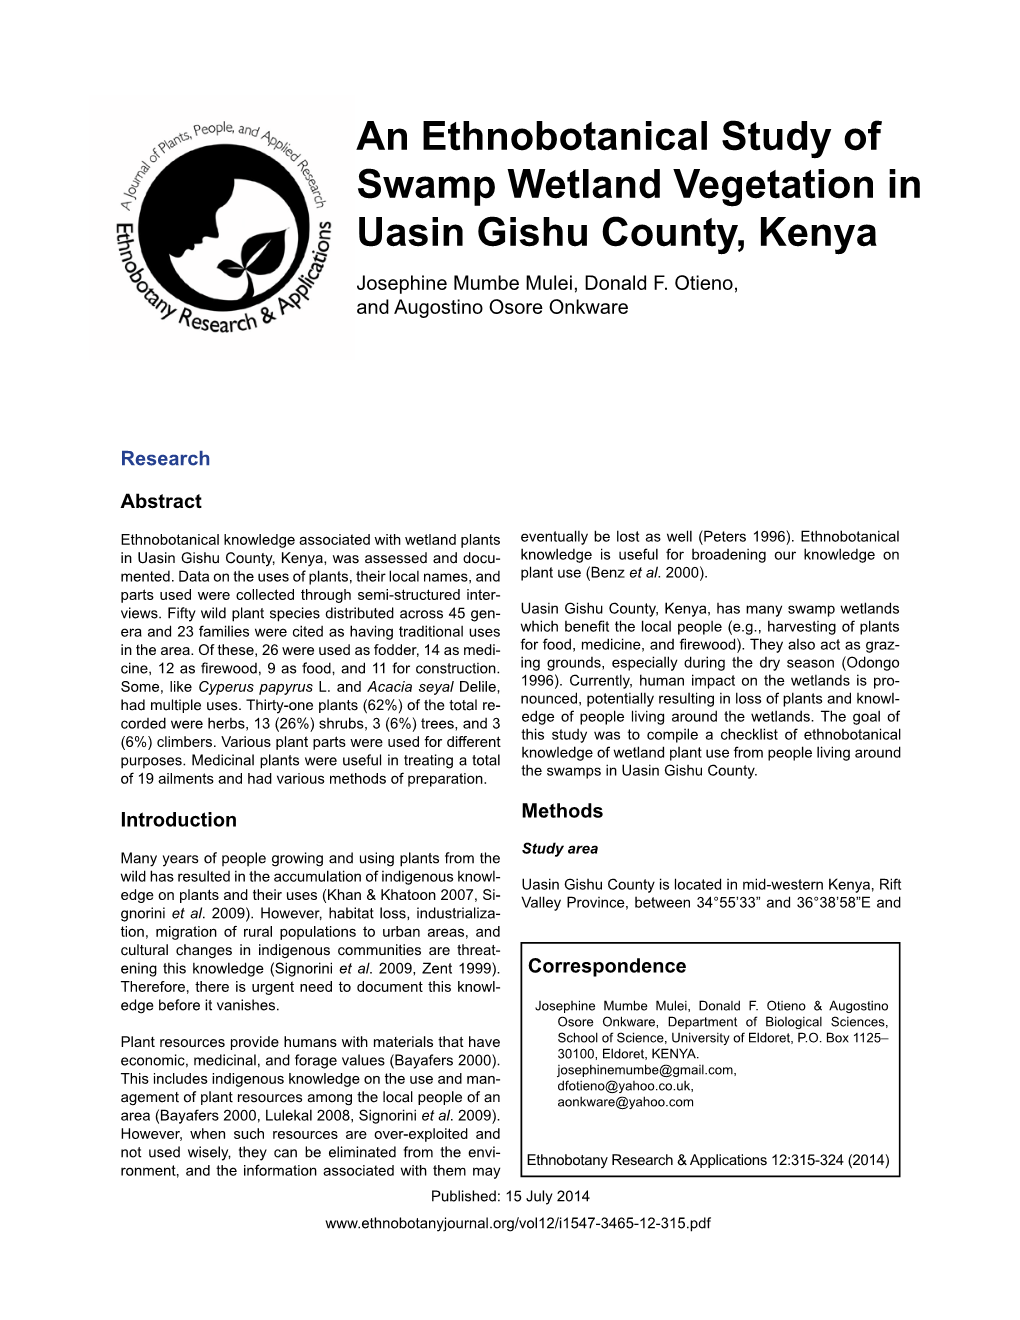 An Ethnobotanical Study of Swamp Wetland Vegetation in Uasin Gishu County, Kenya Josephine Mumbe Mulei, Donald F